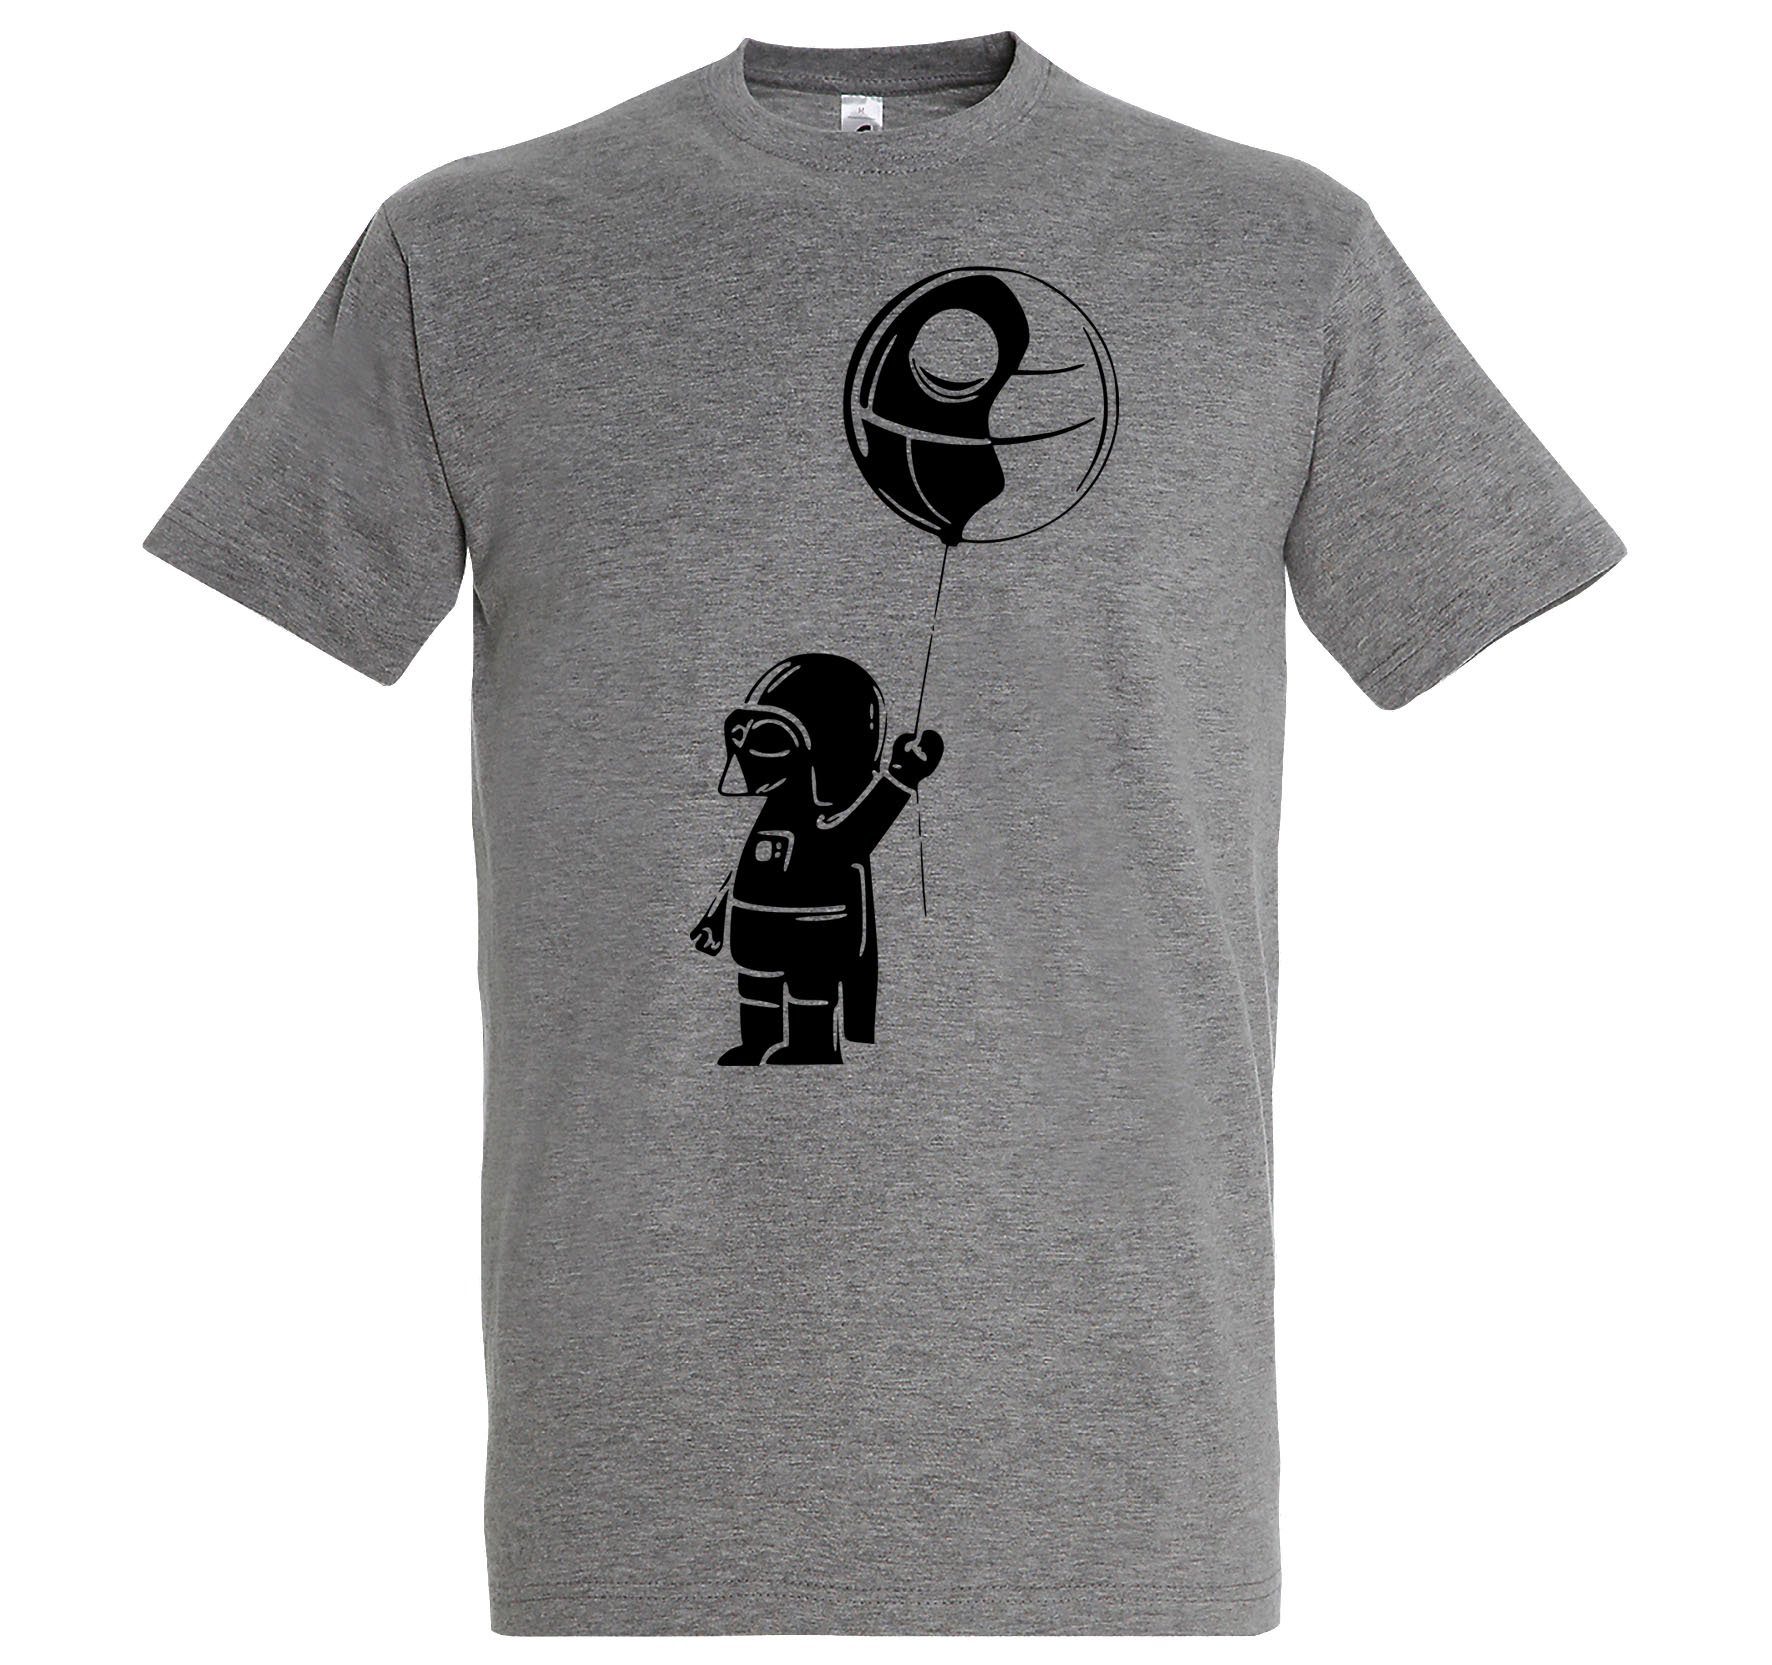 Frontprint Shirt Designz Vater Grau Baby Herren mit Youth T-Shirt lustigem